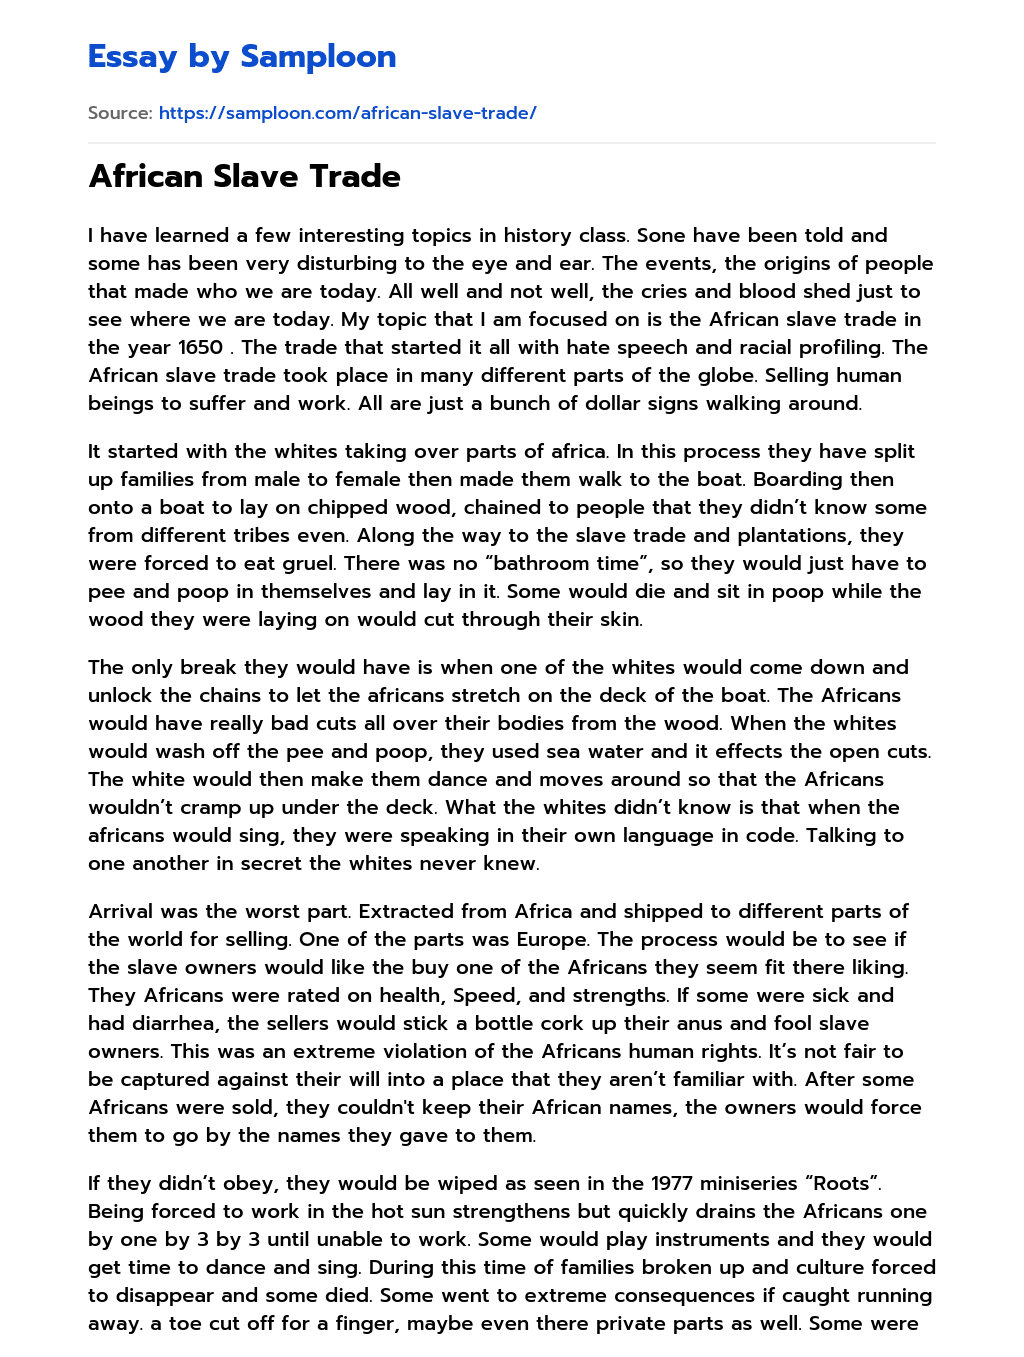 African Slave Trade essay